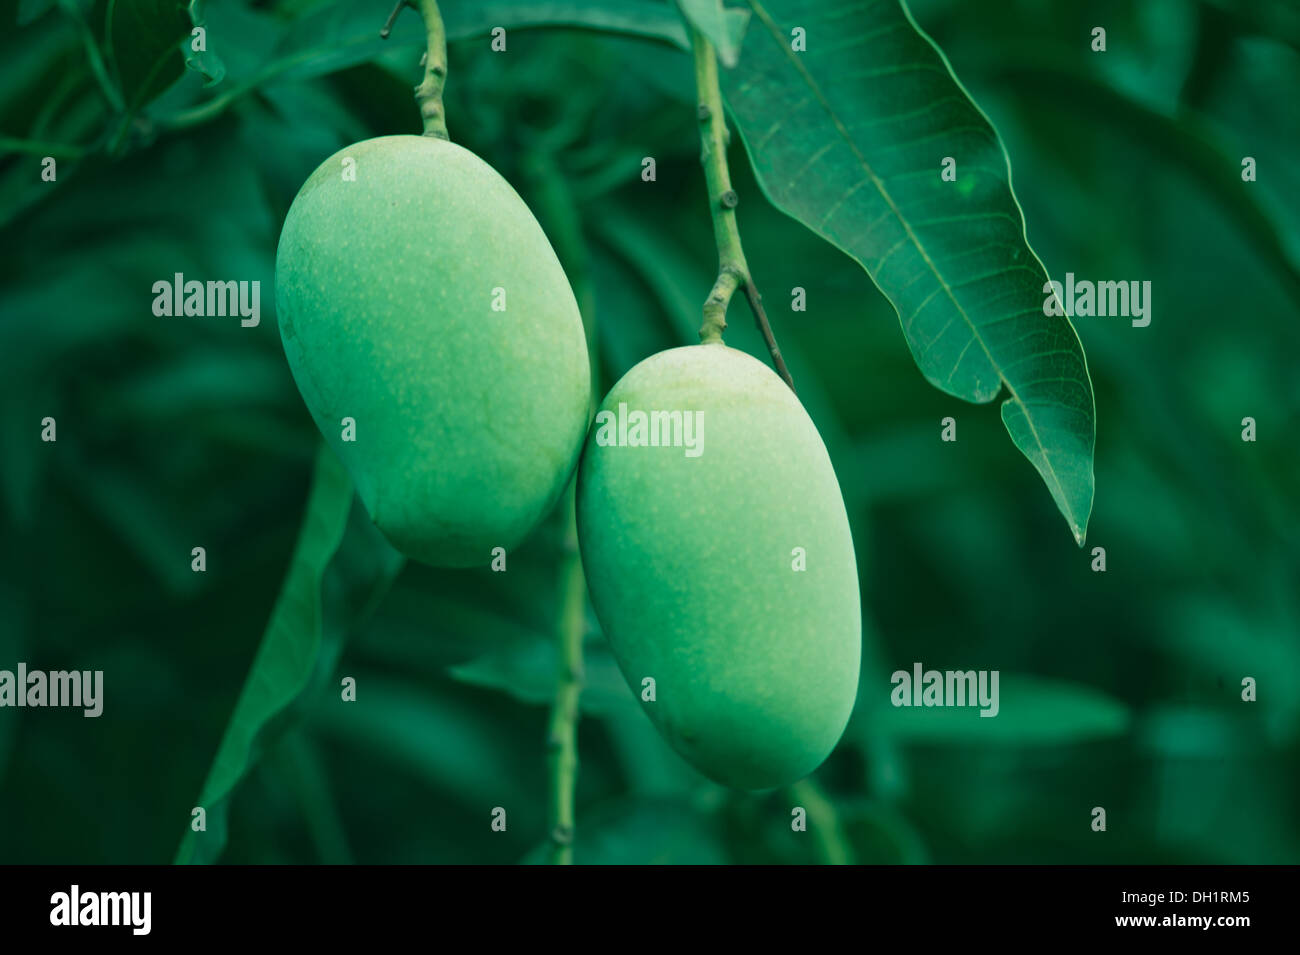 Grüne rohen Mangos wachsen hängen Mango Baum Kolkata Indien Asien Stockfoto